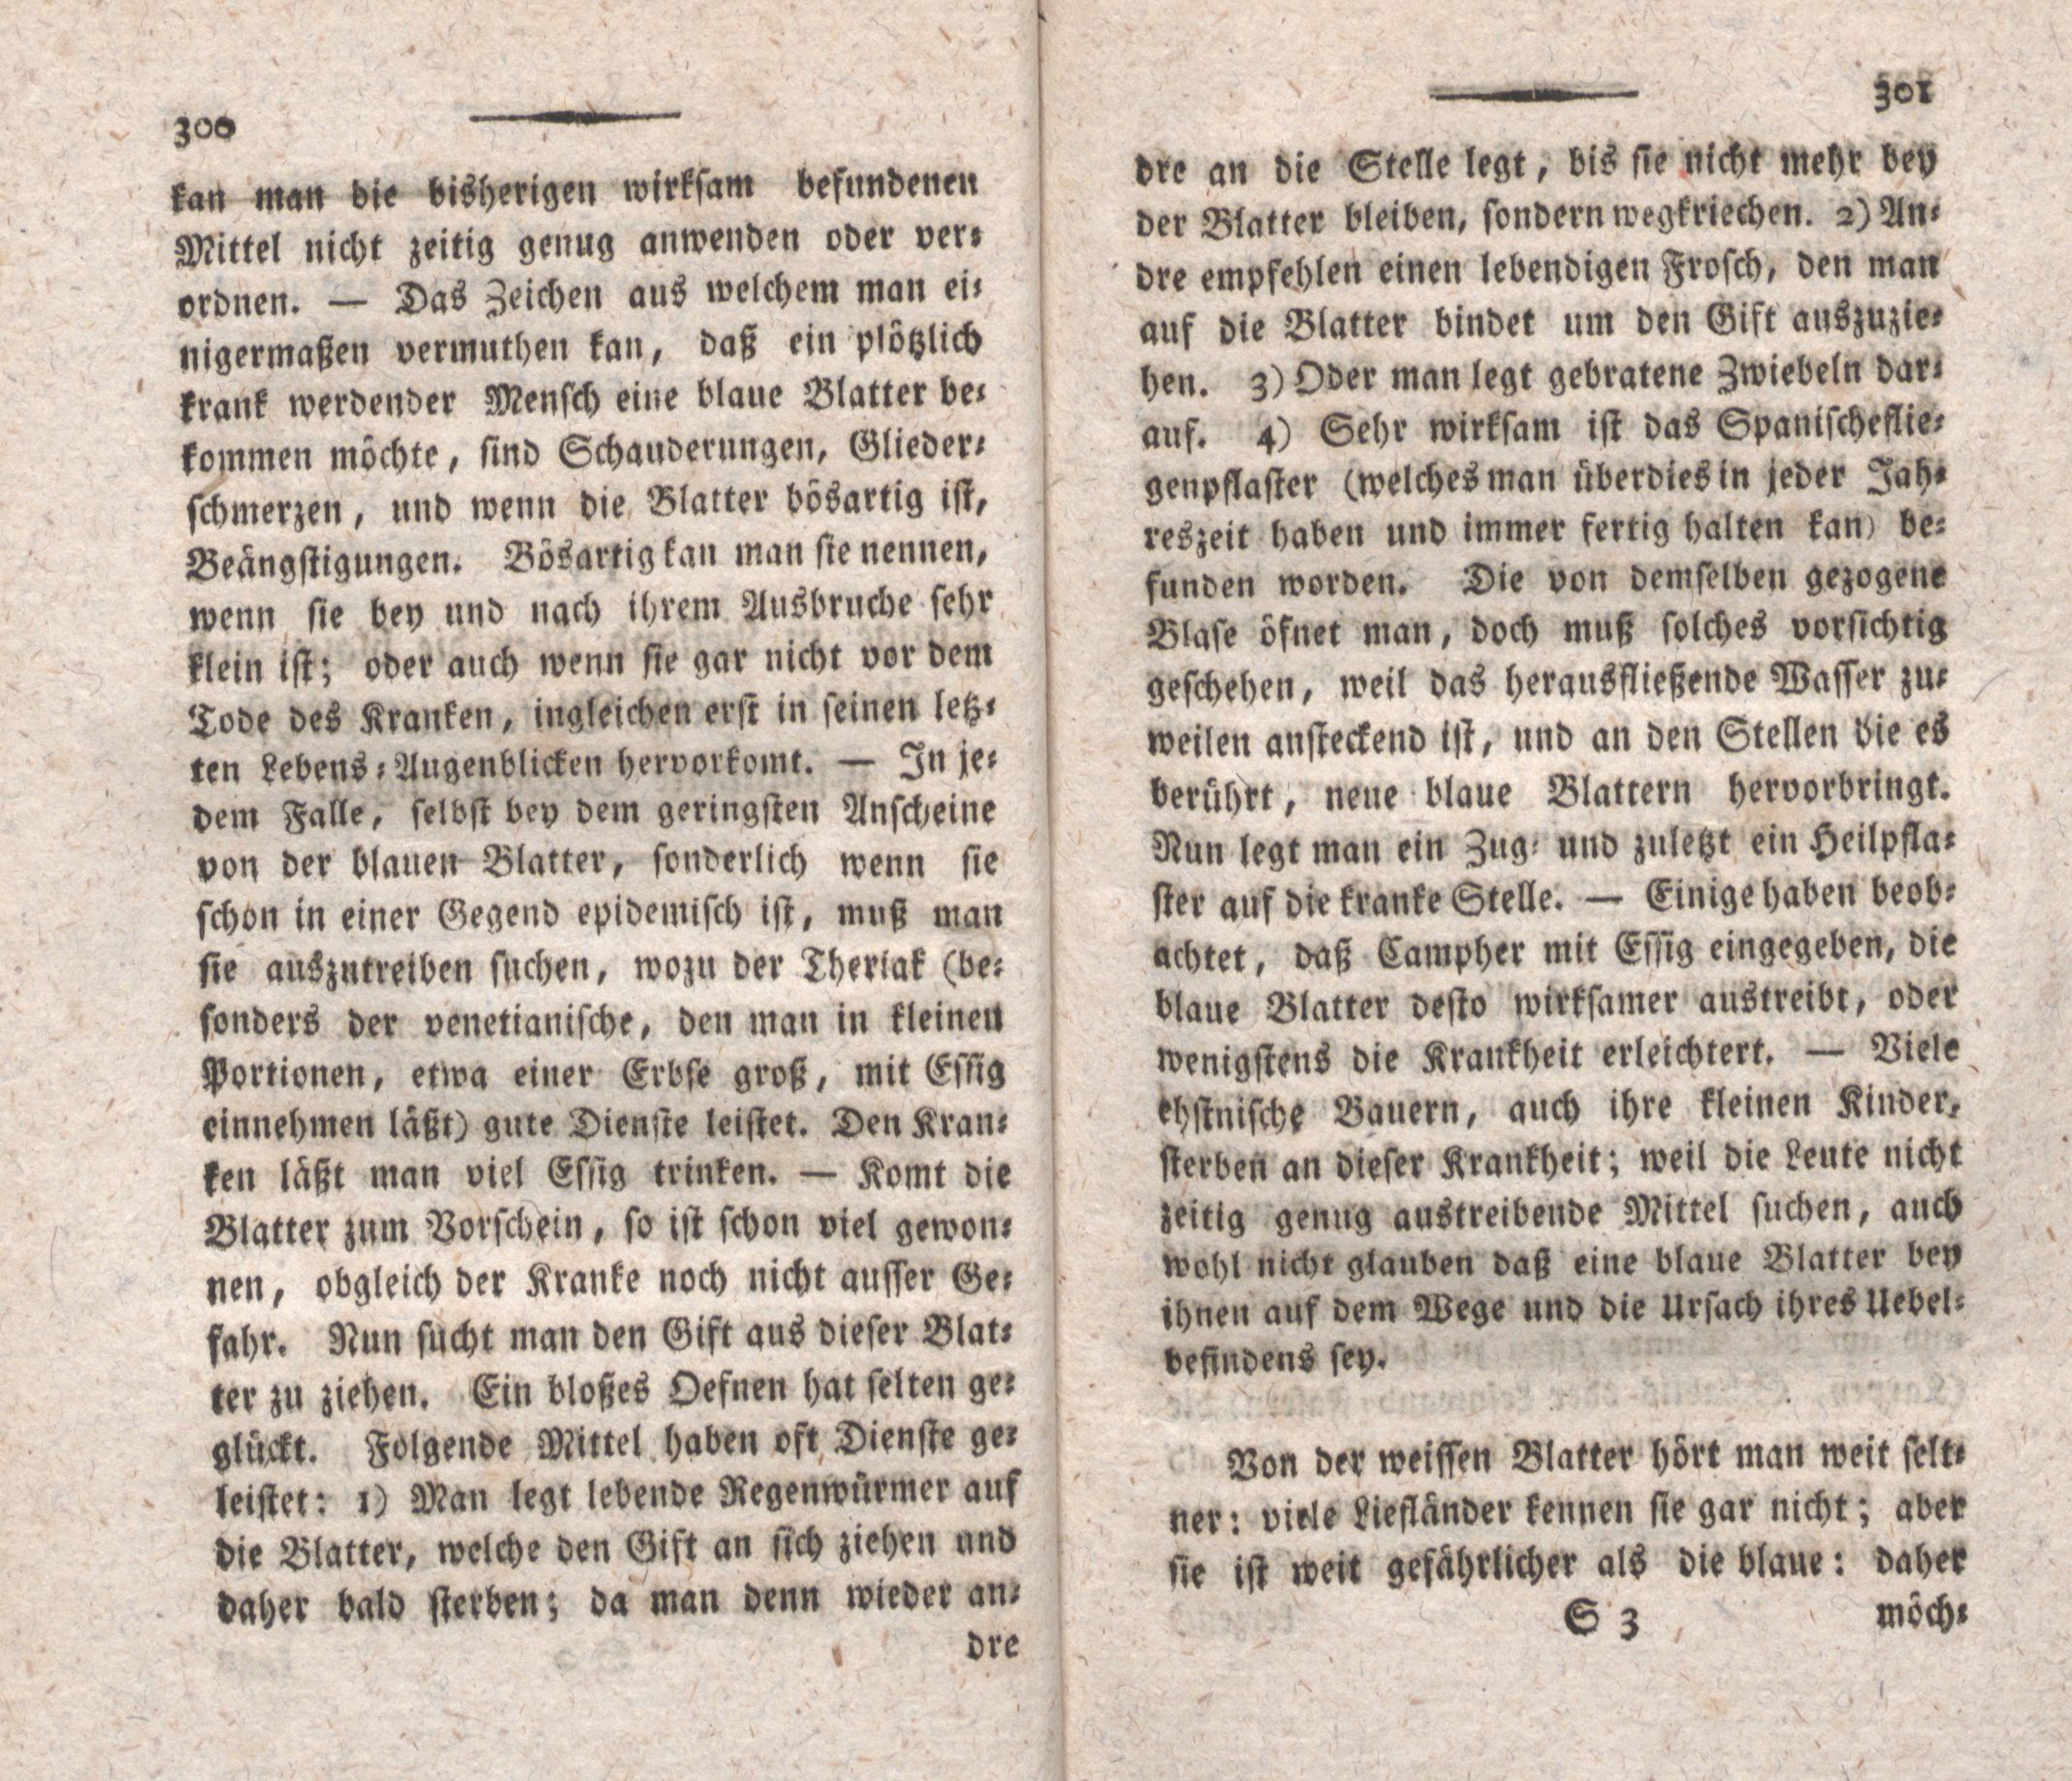 Einige in Liefland über die blaue- und über die weisse Blatter neuerlichst gesammelte Beobachtungen (1798) | 2. (300-301) Põhitekst